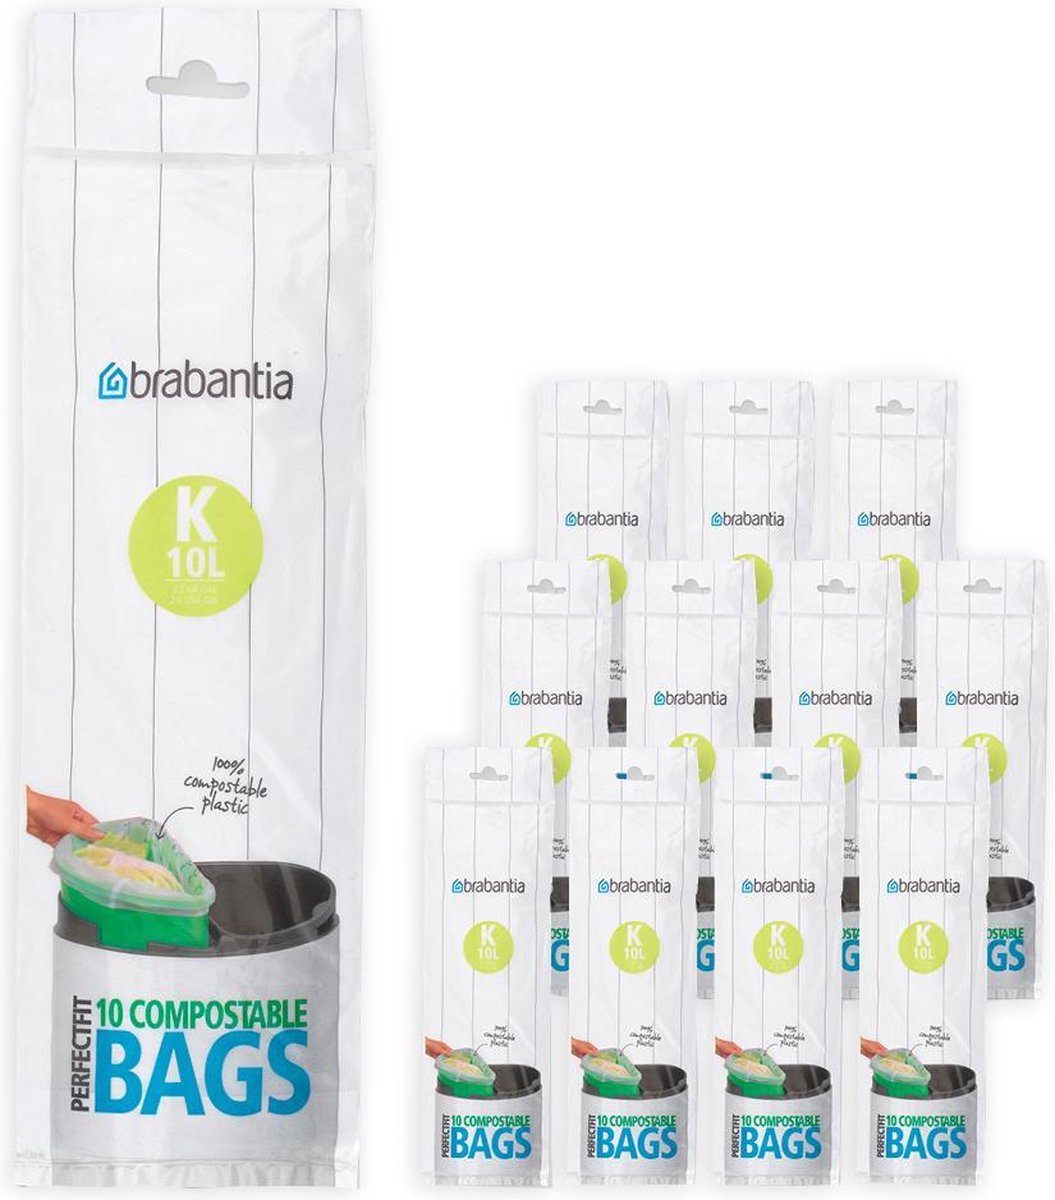 Brabantia sac poubelle compostable 10 litres code K vert - Carton